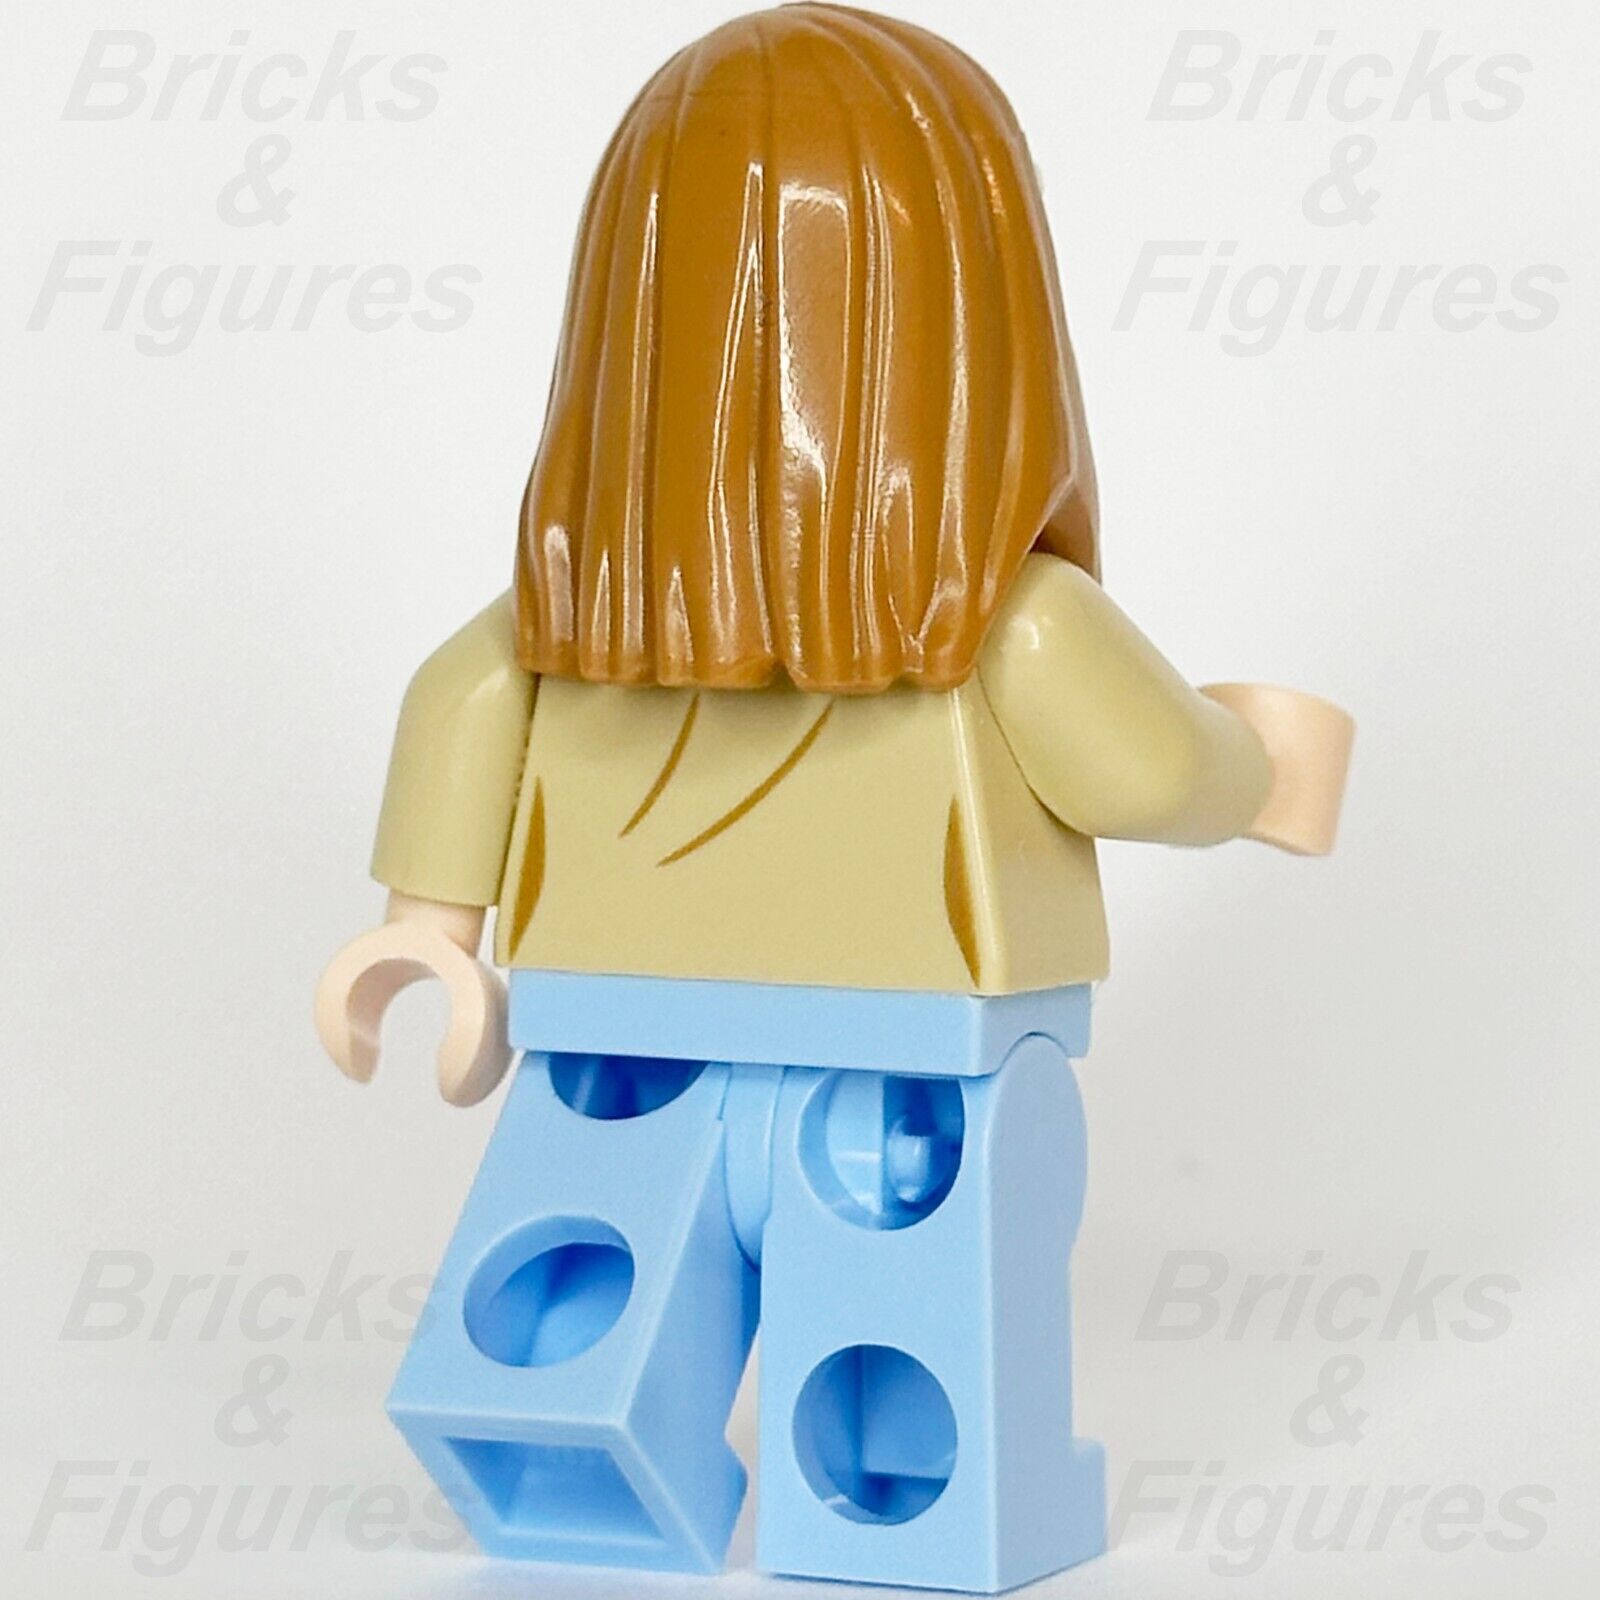 LEGO Ideas Allison Watts Minifigure Disney Hocus Pocus CUUSOO 21341 idea160 - Bricks & Figures